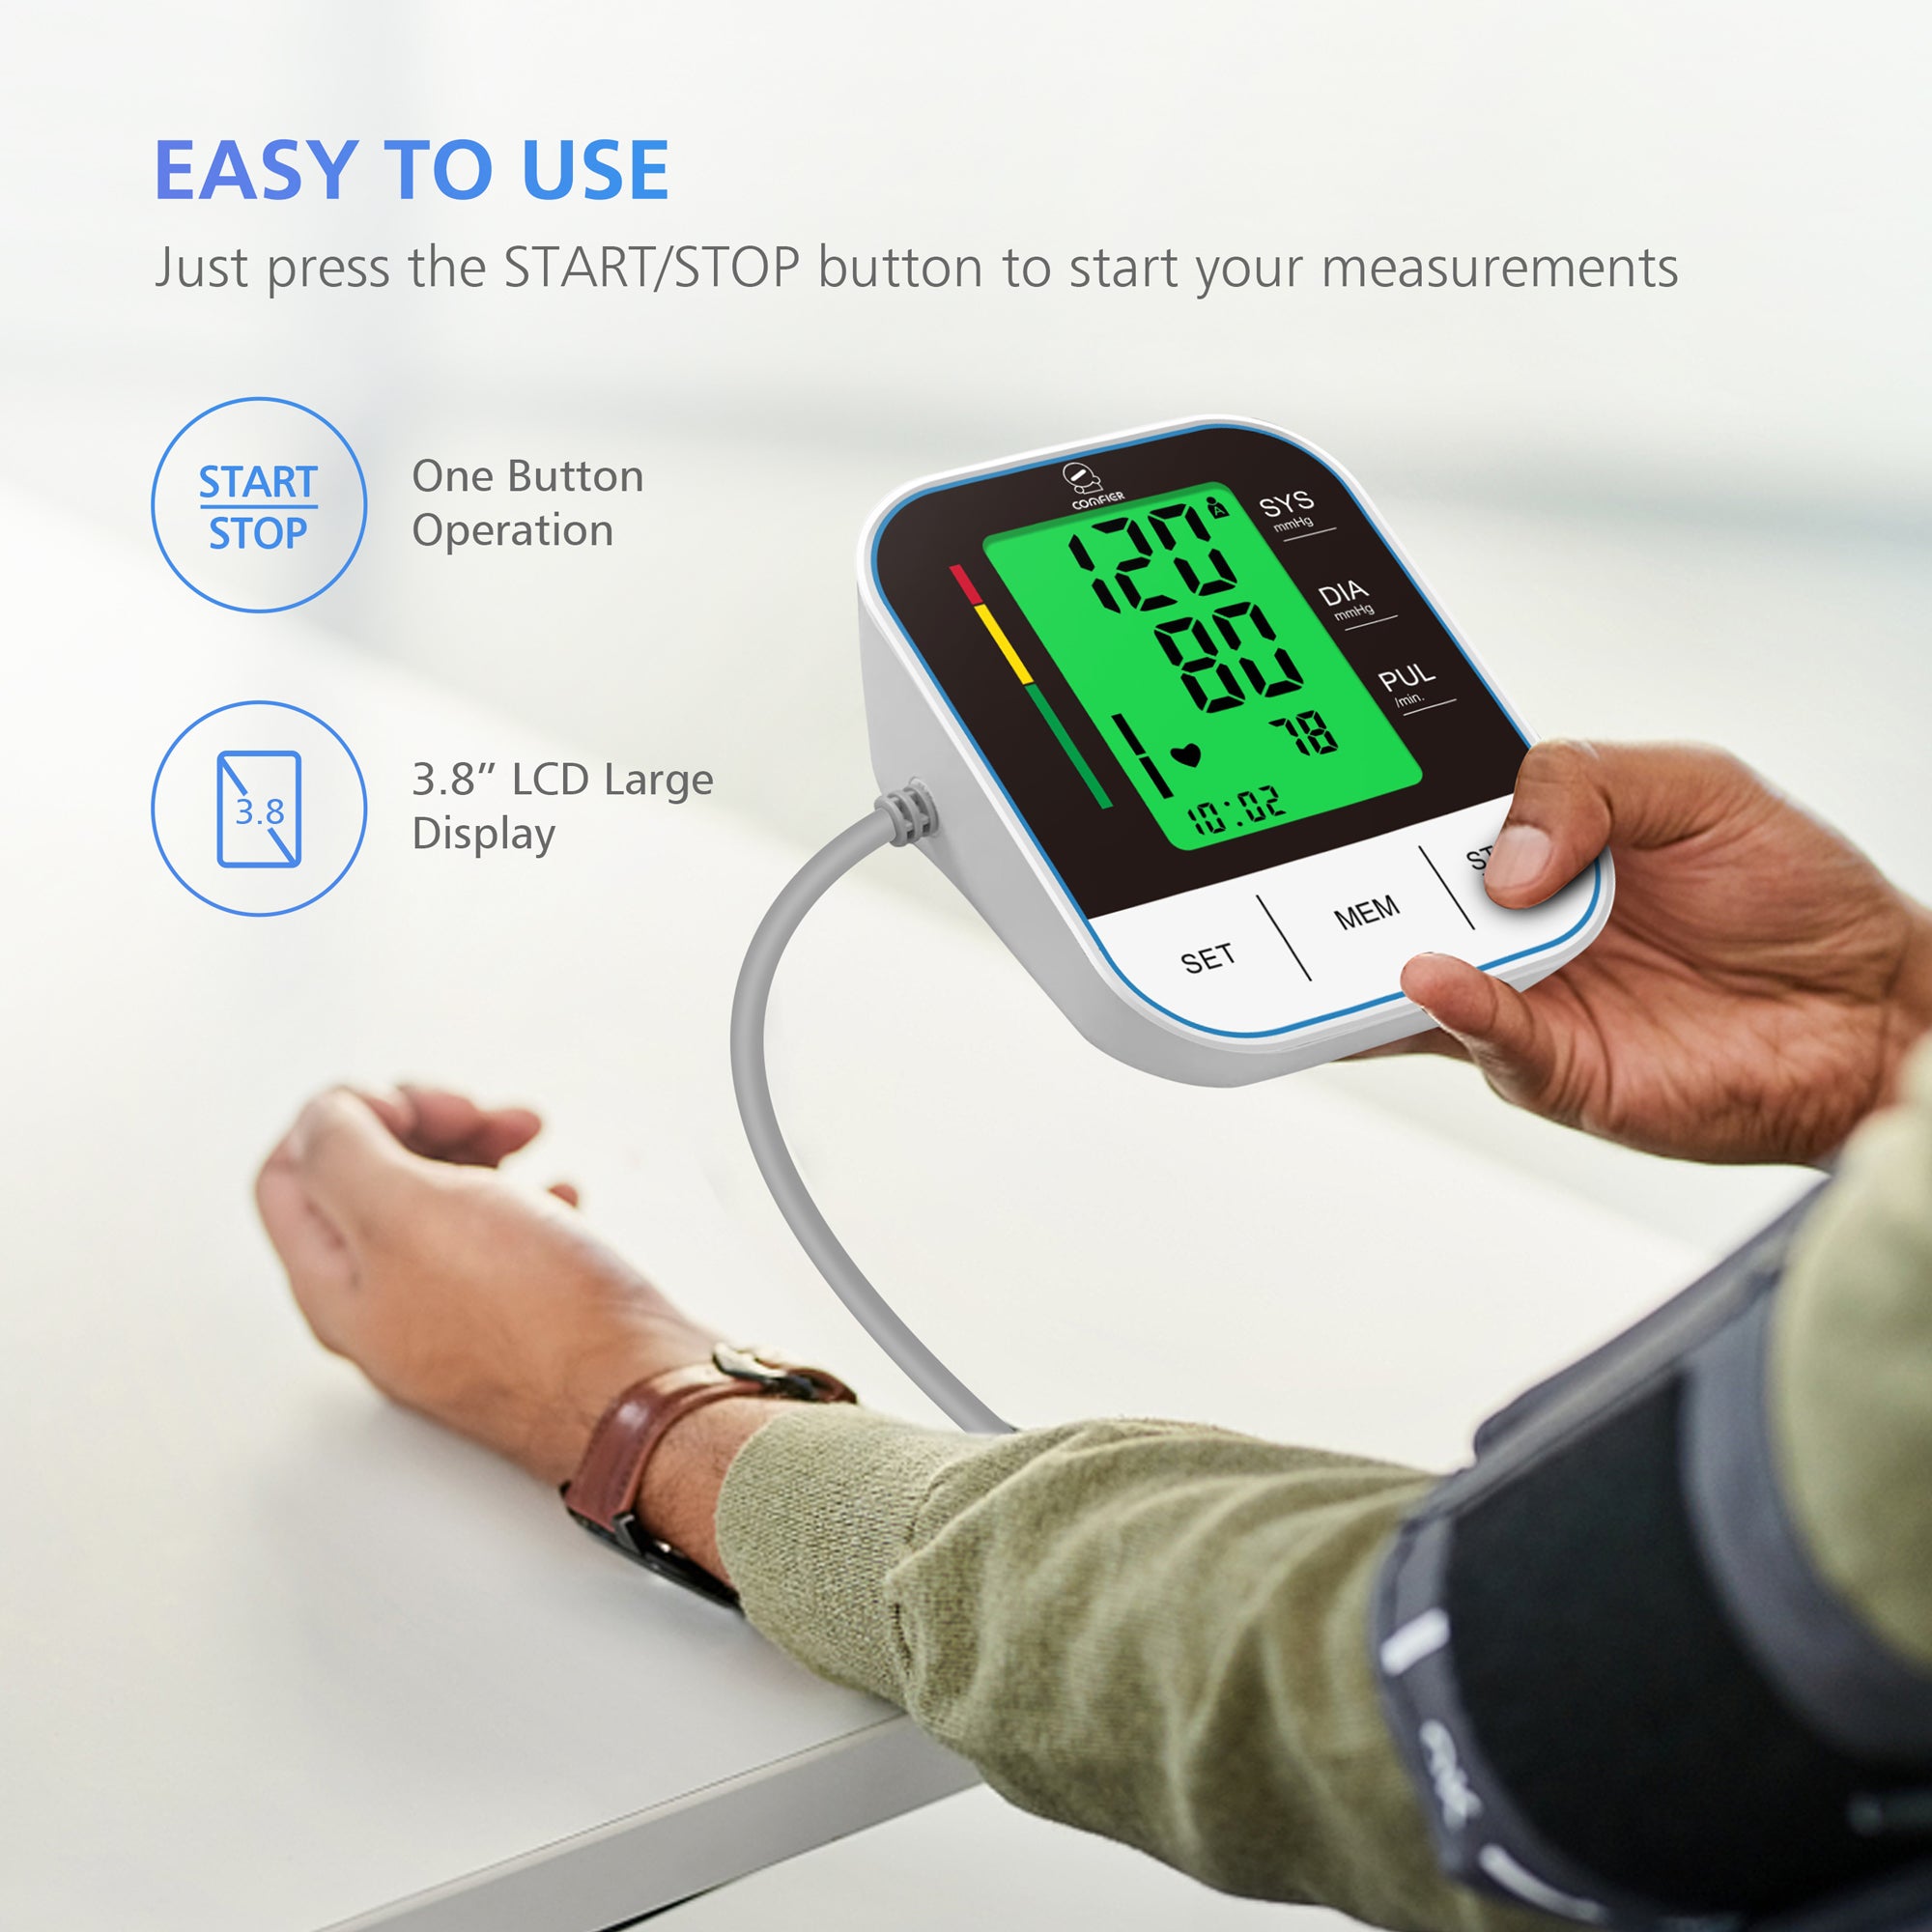 Comfier Arm Blood Pressure Monitor & Blood Pressure Cuff Machine for Home Use (Blue ) - B15BLU